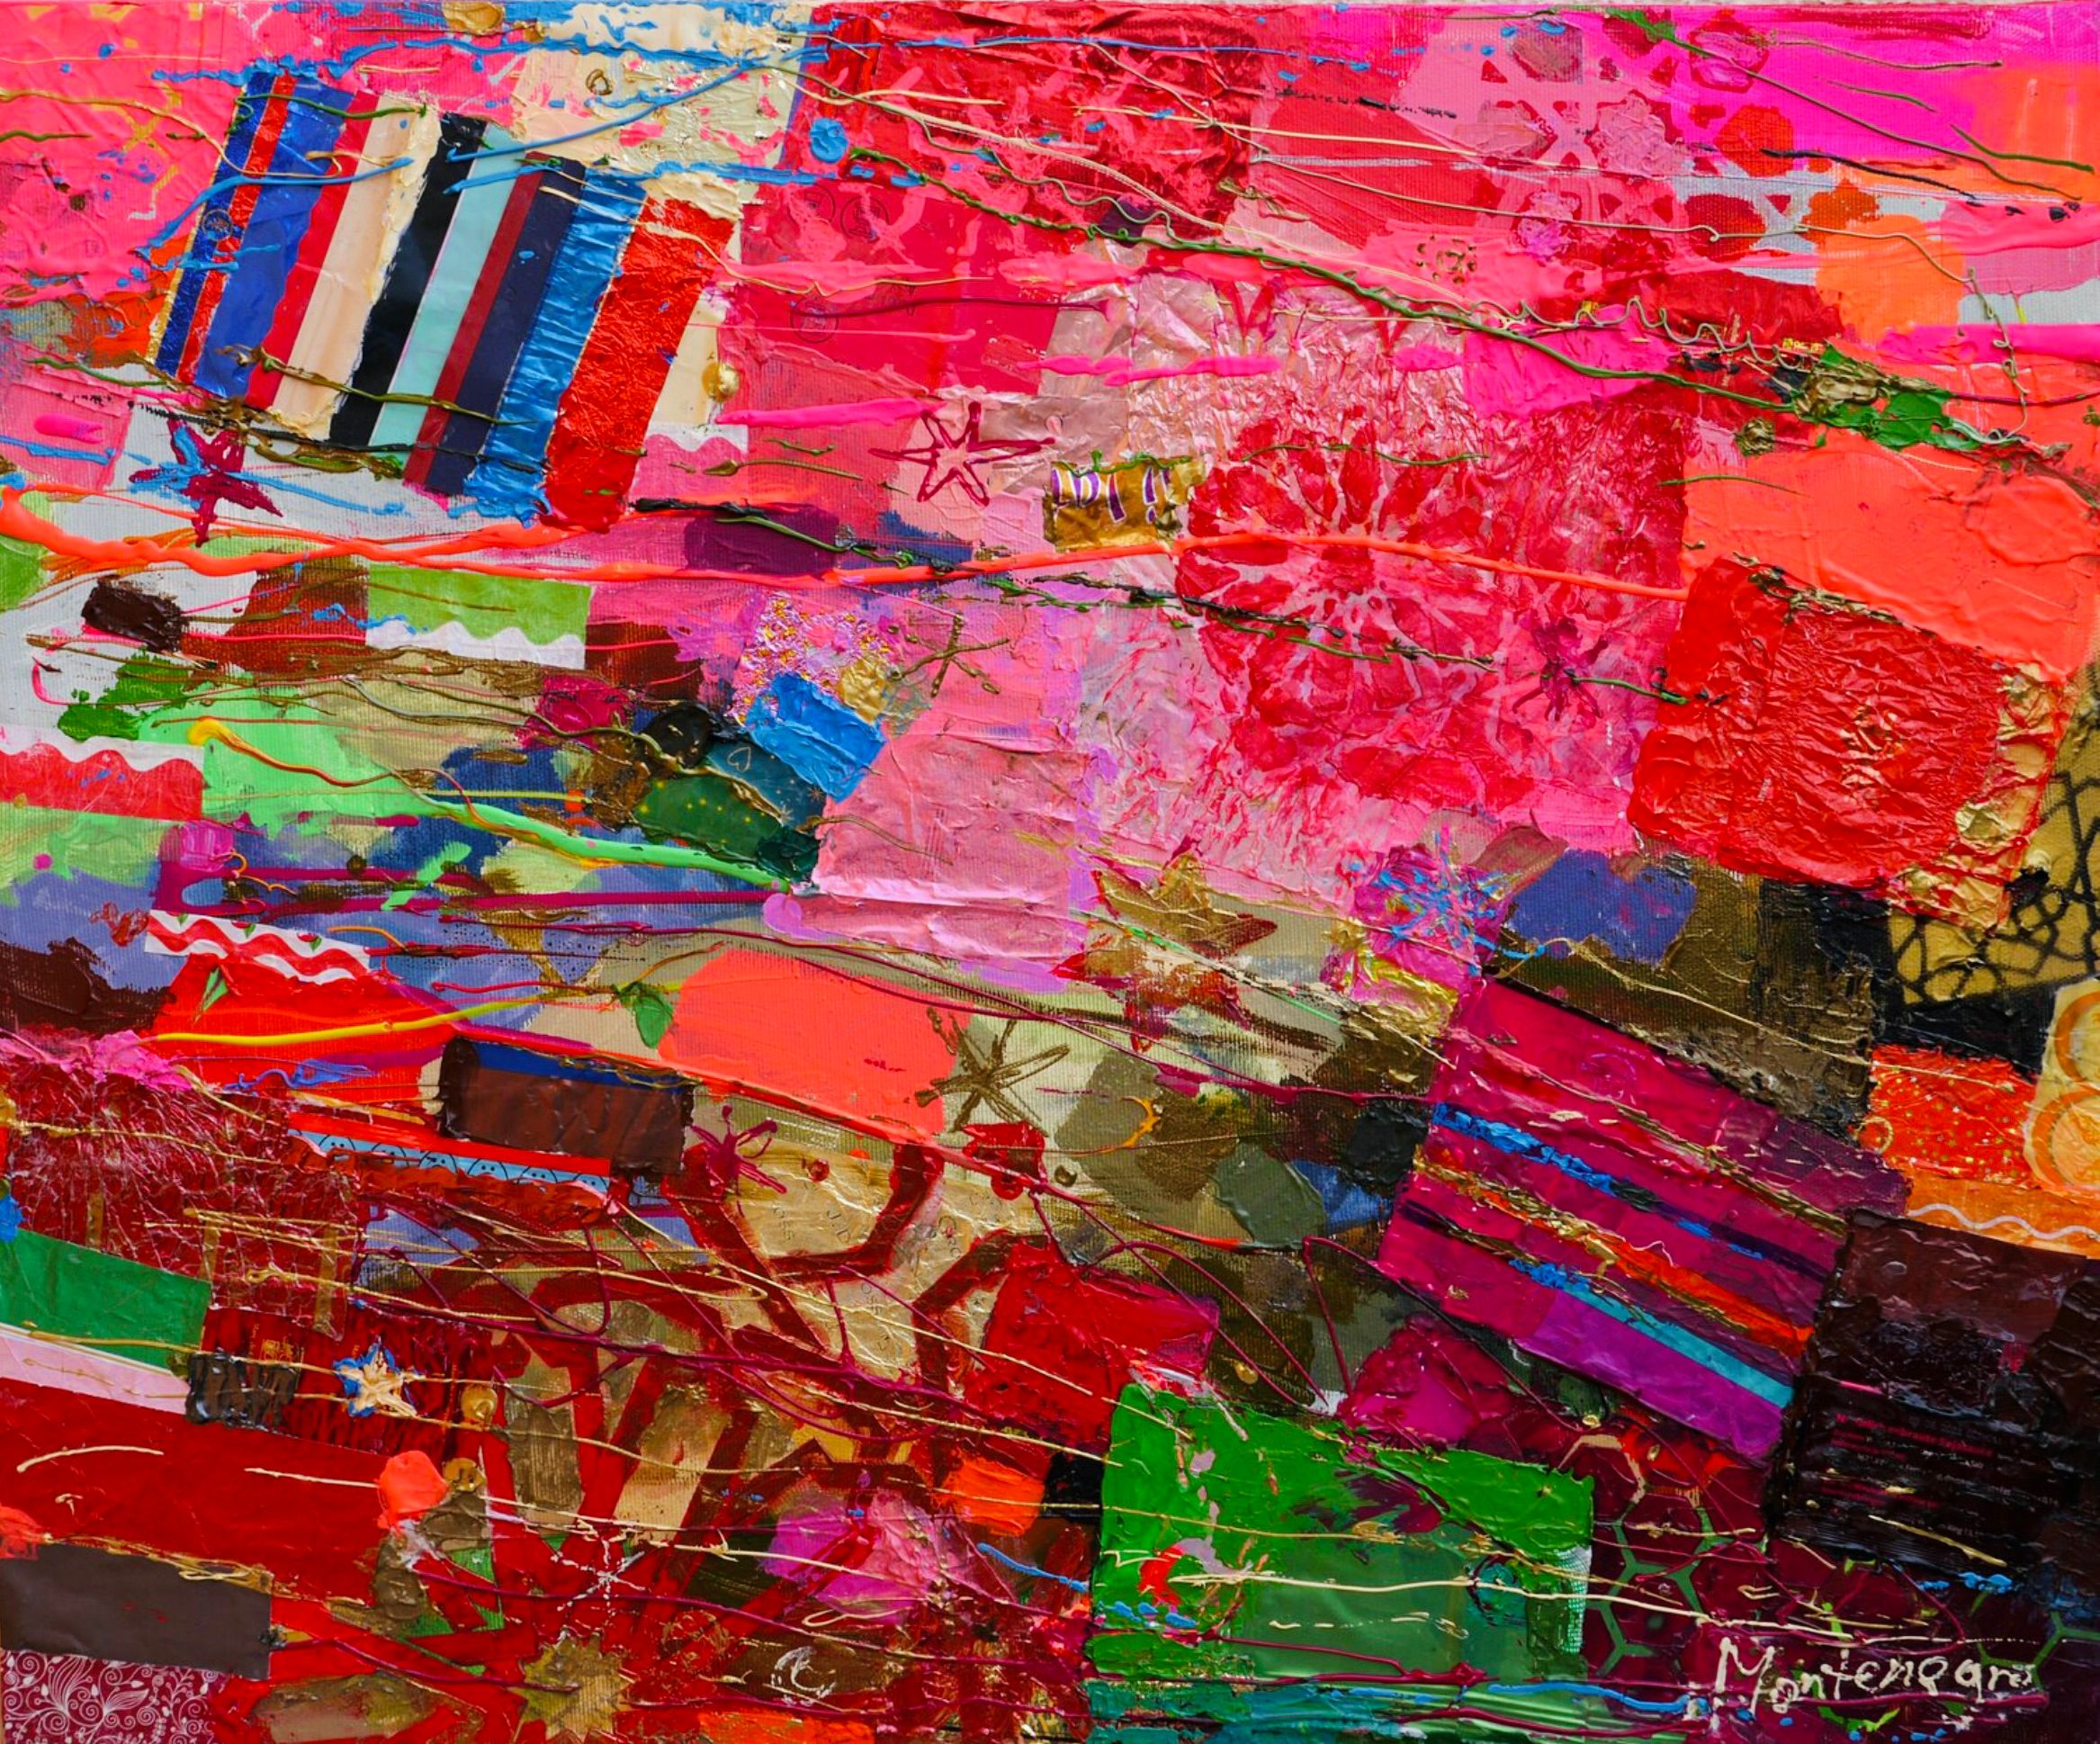 米里亚姆-黑山的表现主义绘画粉红色和红地毯图案